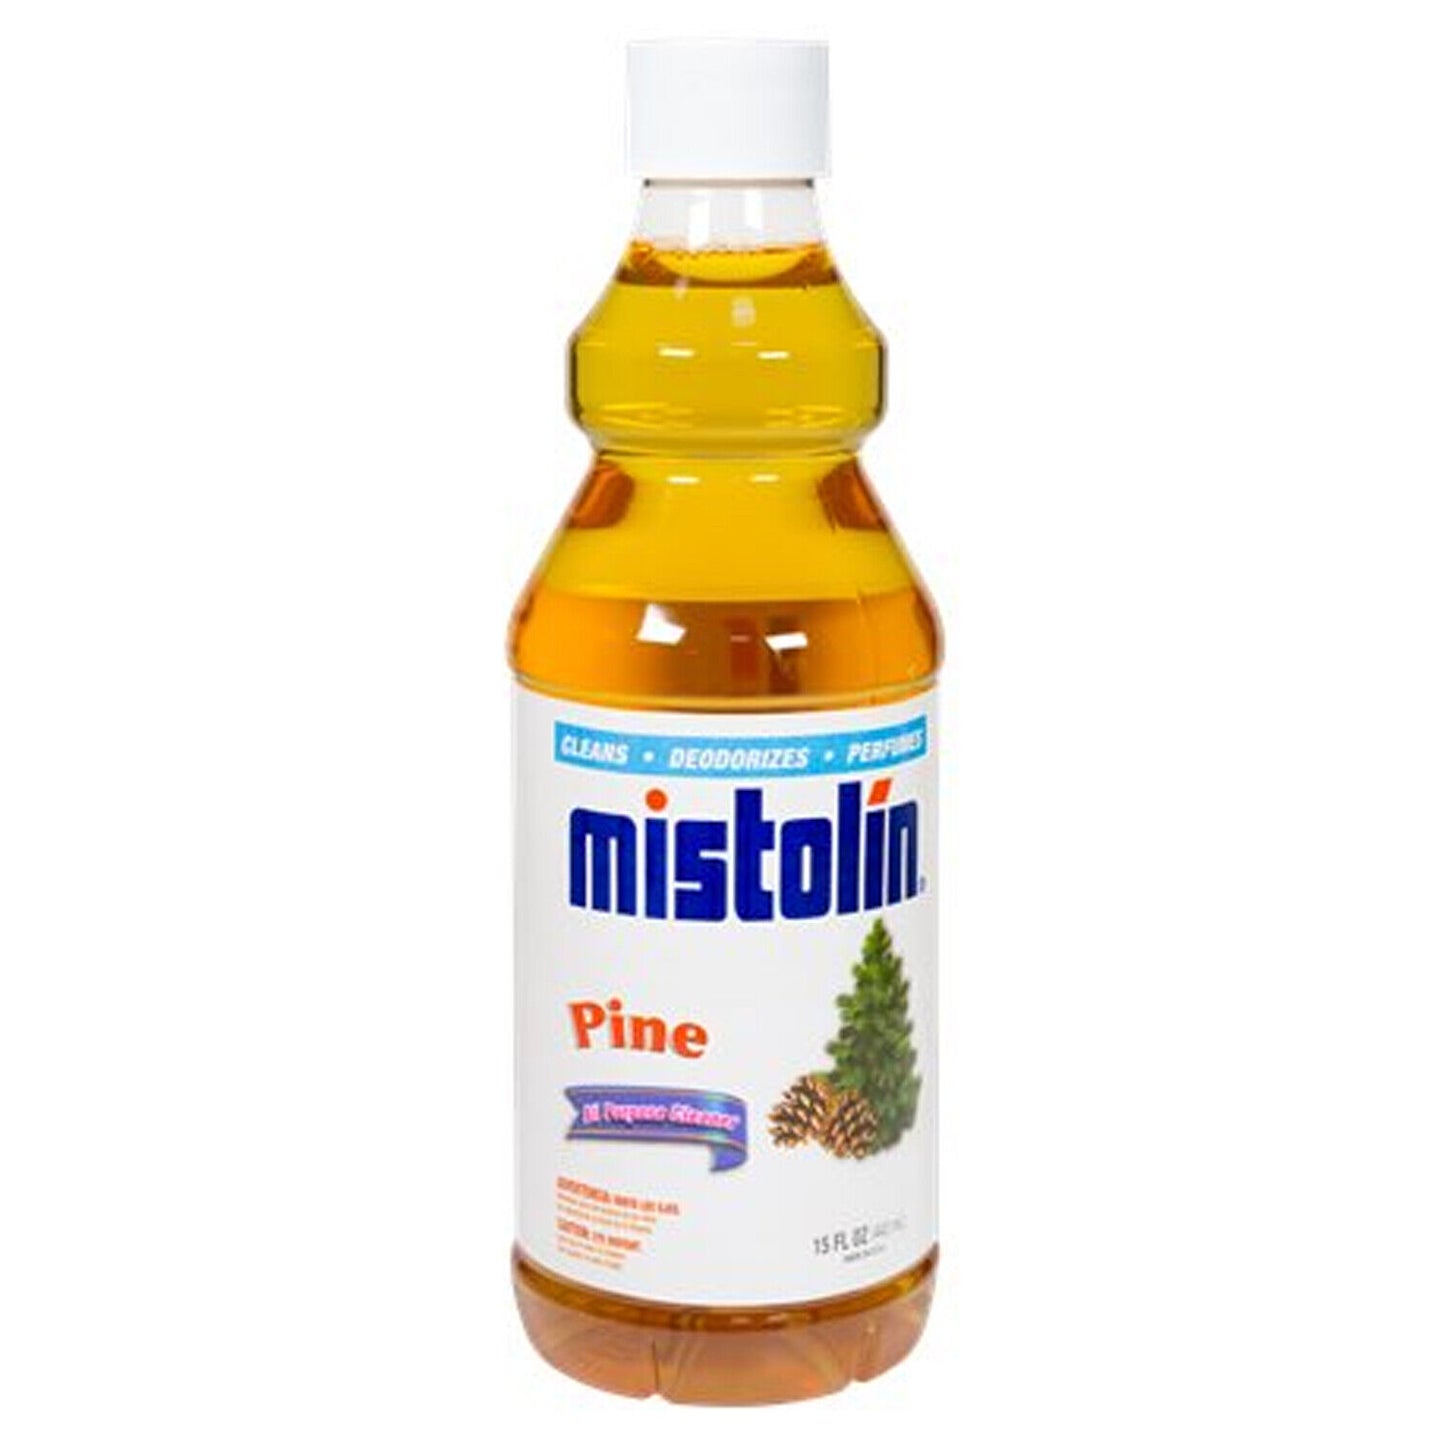 Pine Mistolin